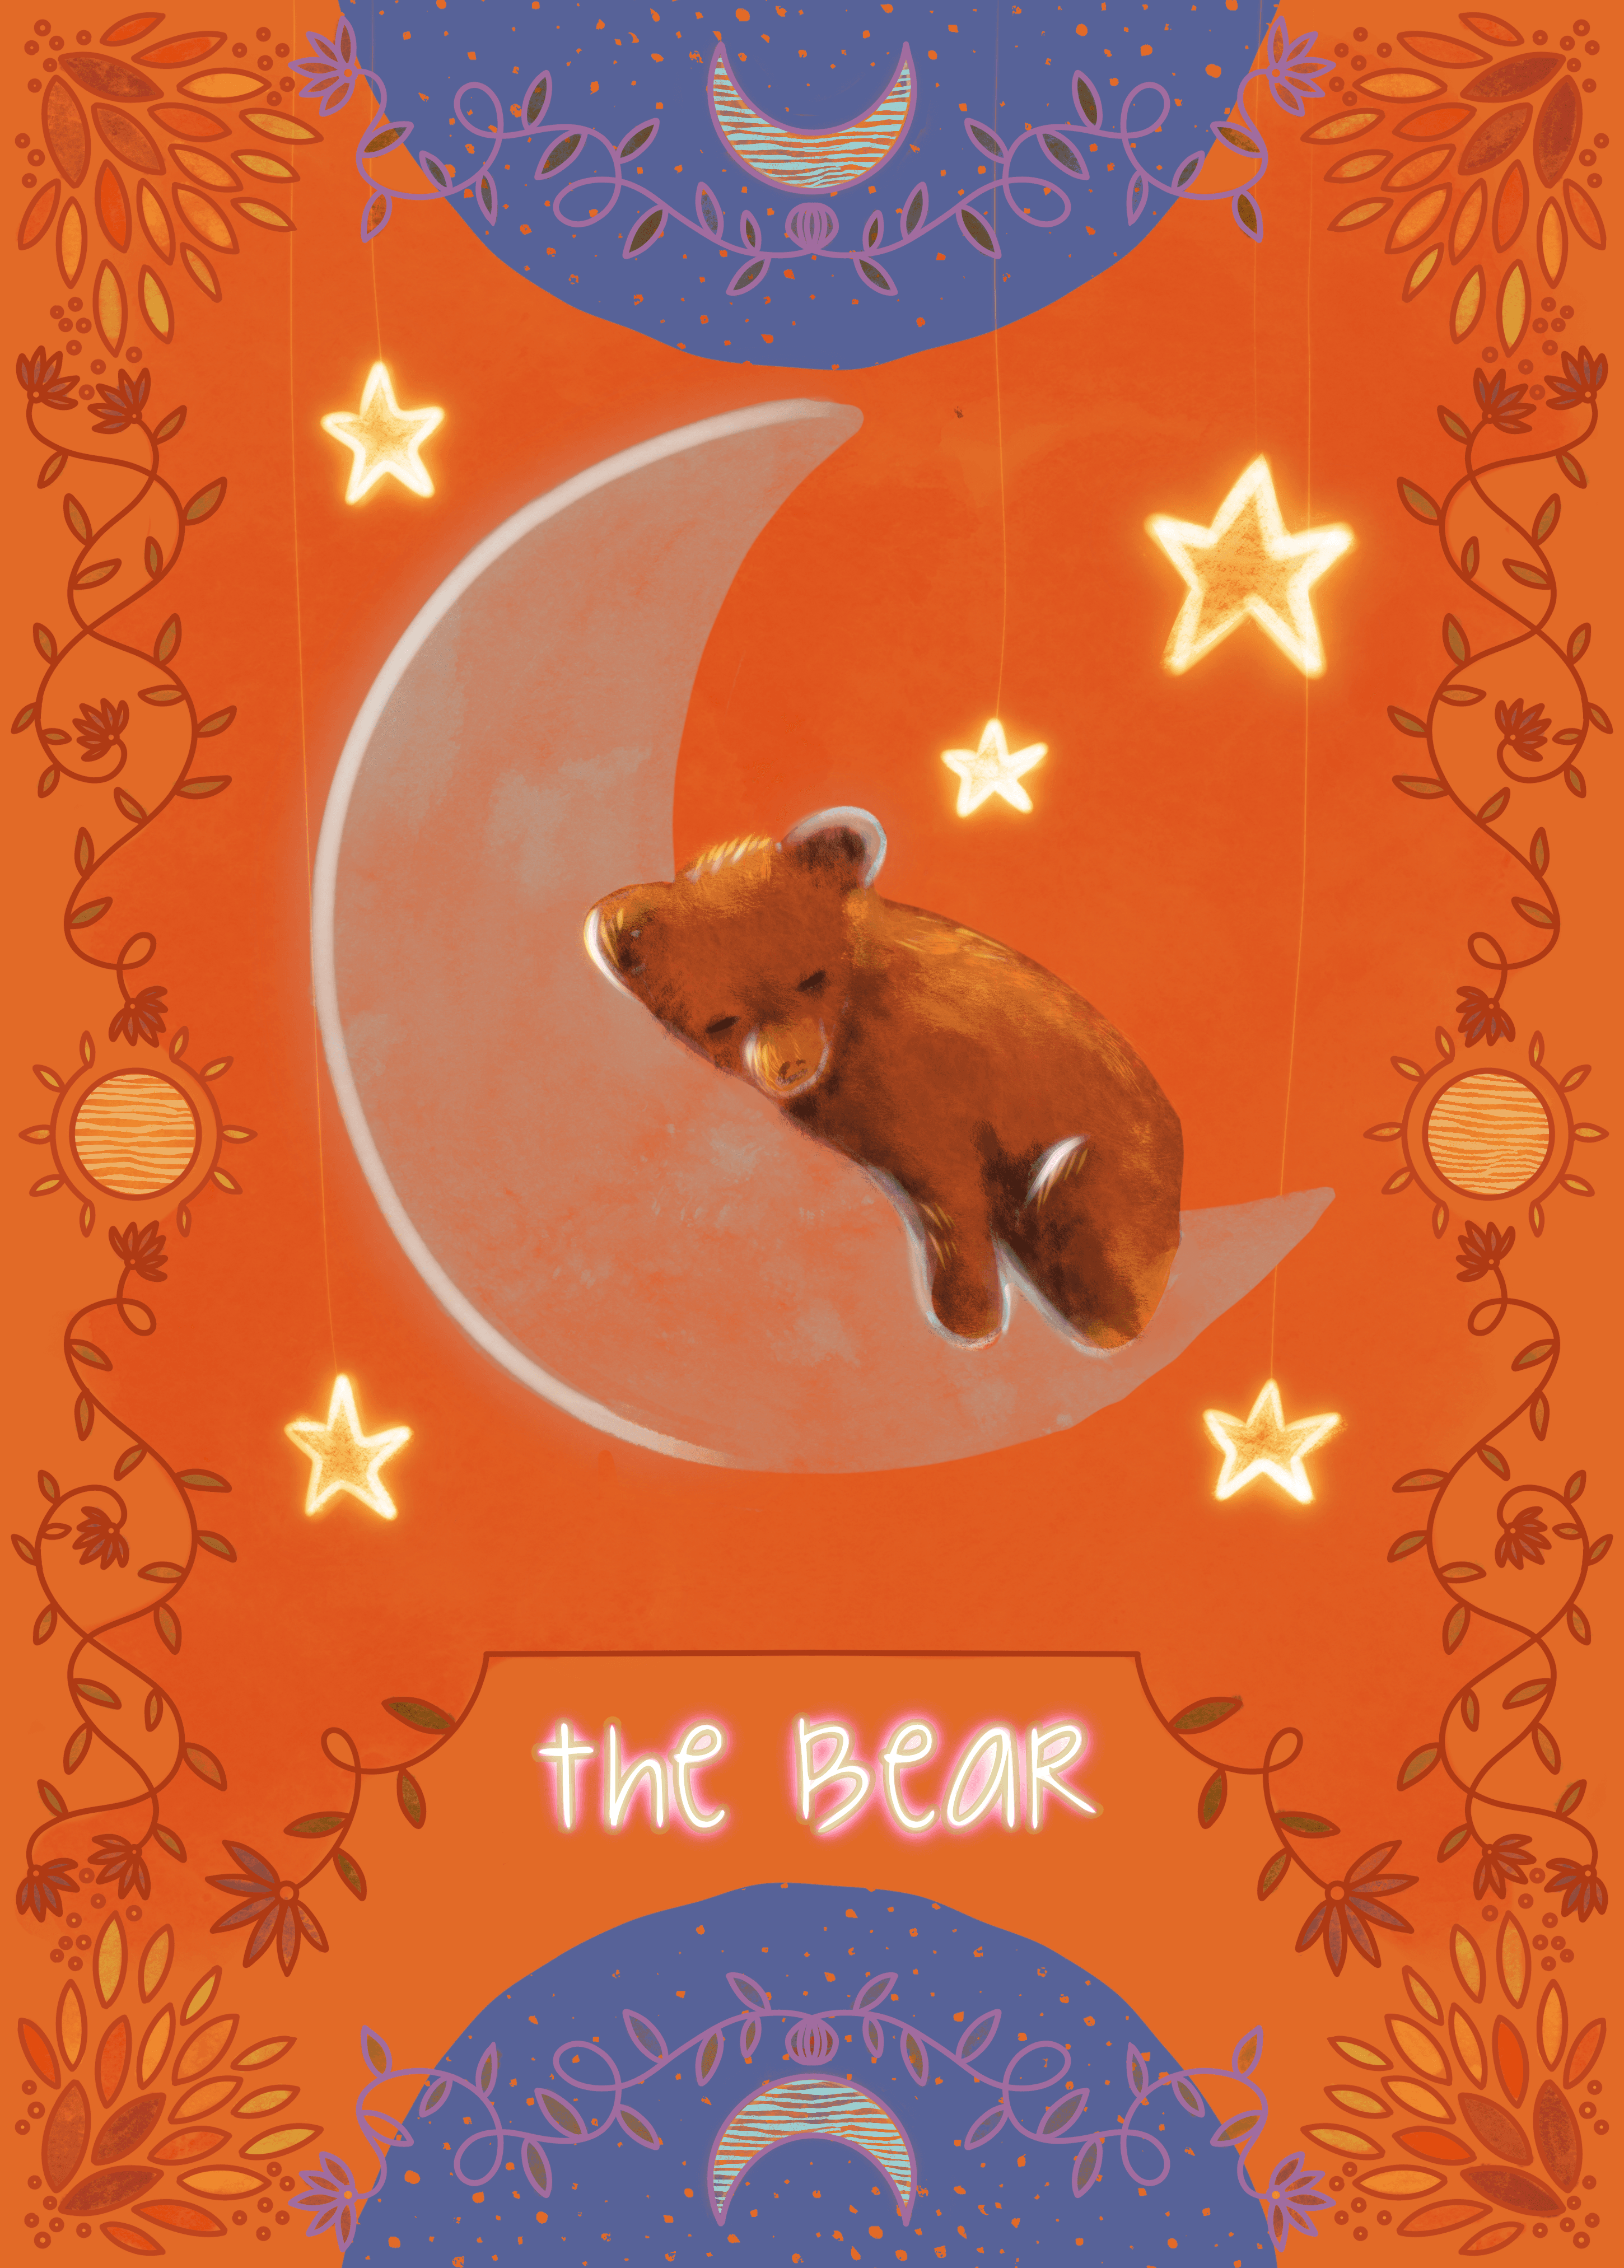 The Bear Cub #9/12